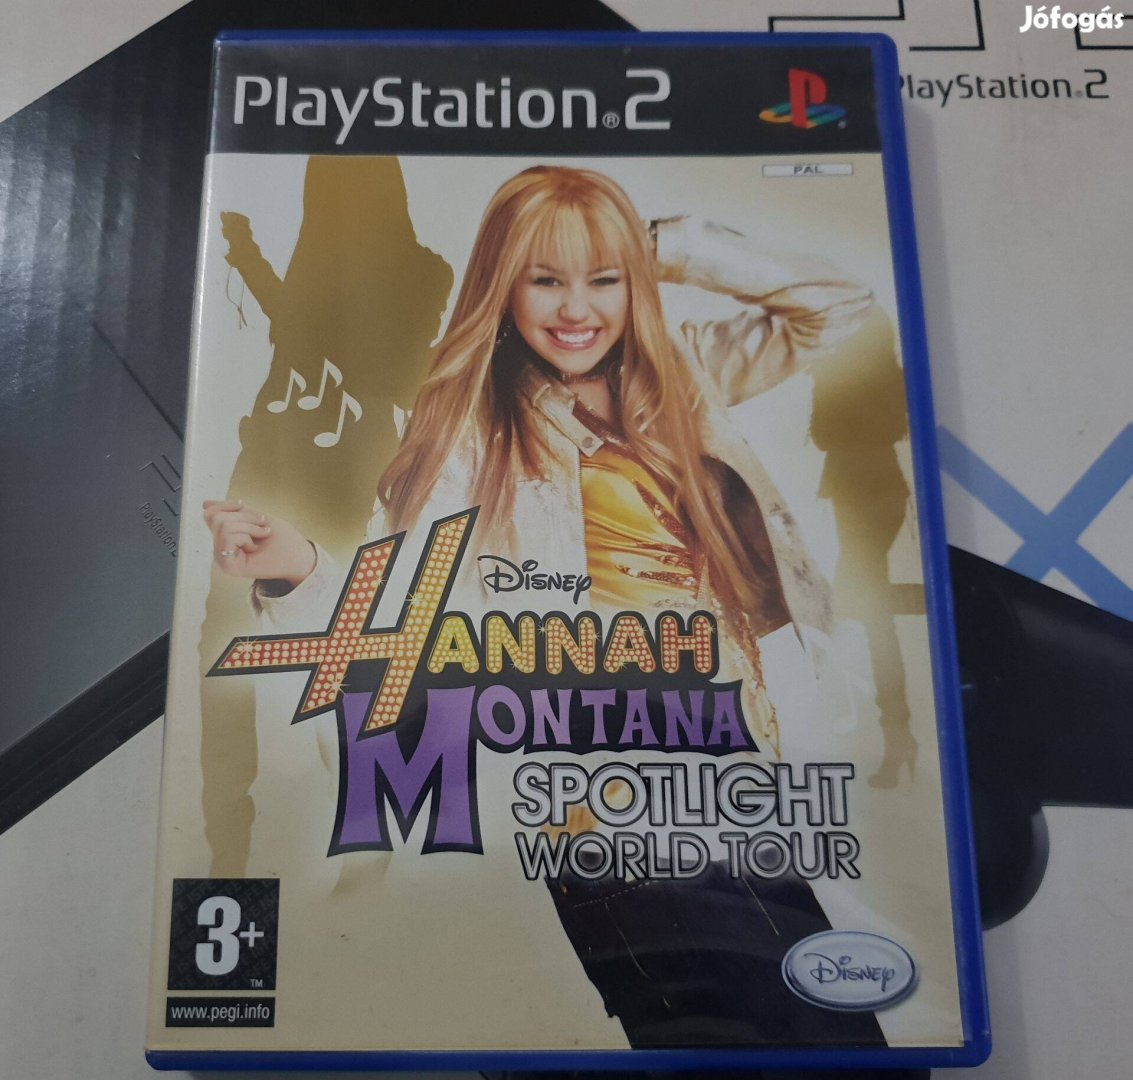 Hannah Montana Spotlight World Tour Playstation 2 eredeti lemez eladó